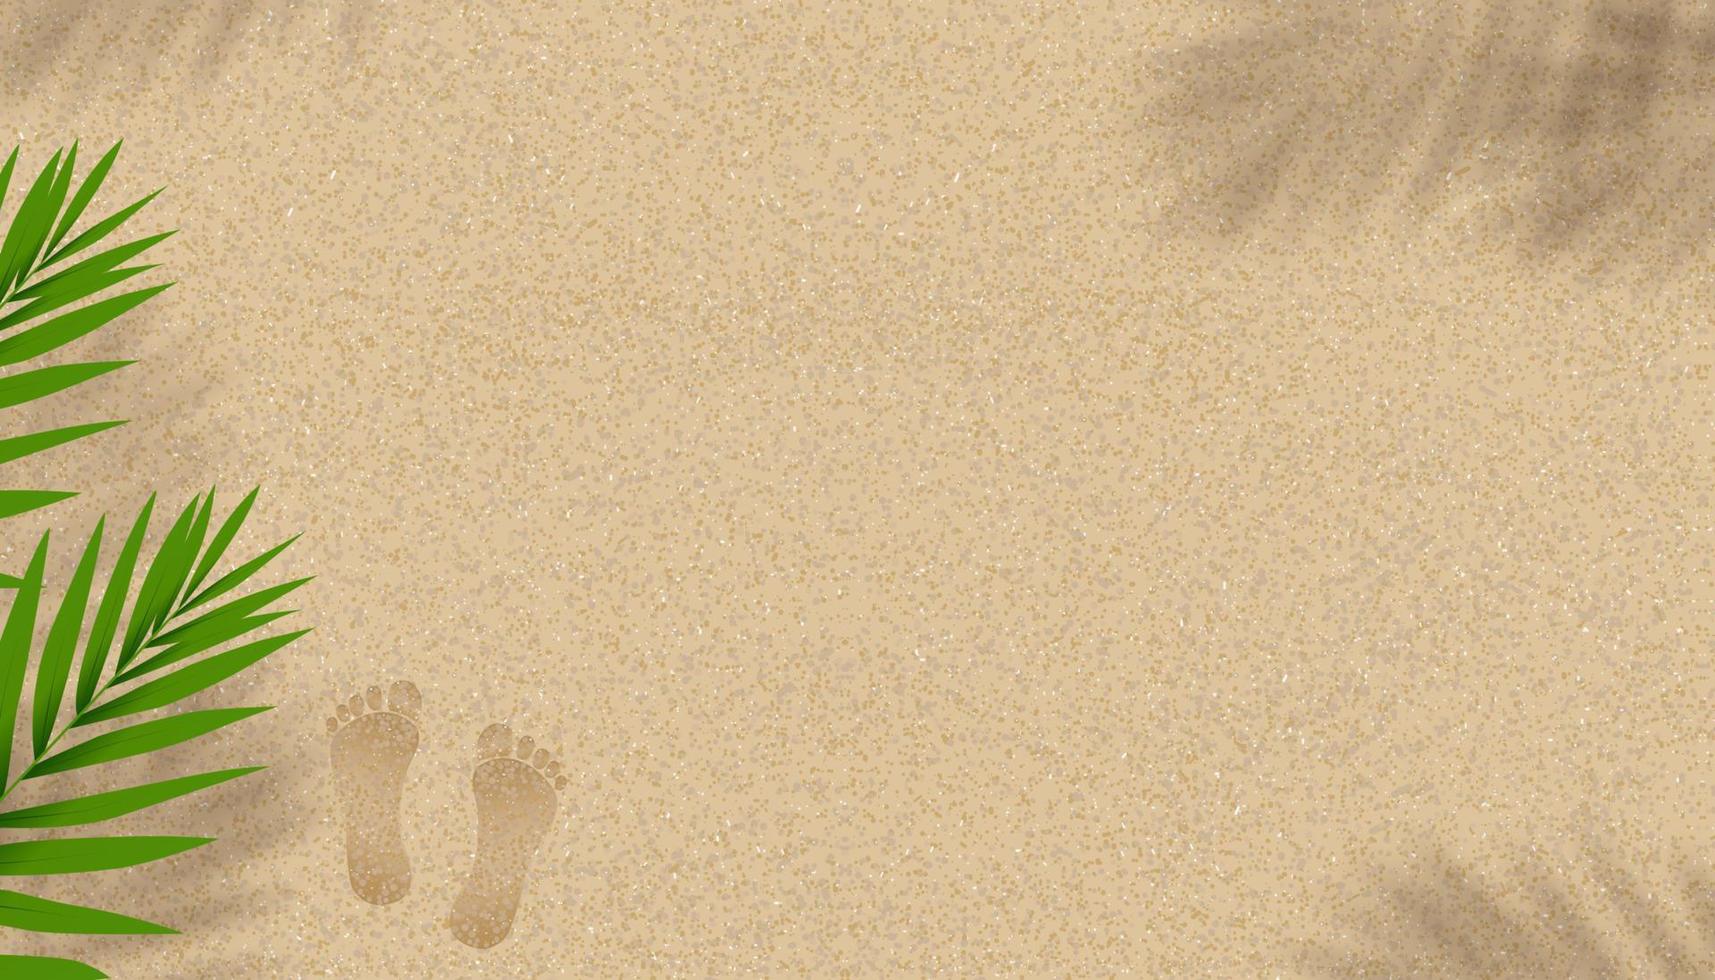 fundo de textura de praia arenosa com folhas de coqueiro sombra e pegadas, fundo de pano de fundo de horizonte vetorial com silhueta de folha descalça e tropical na duna de areia da praia marrom para banner de verão vetor